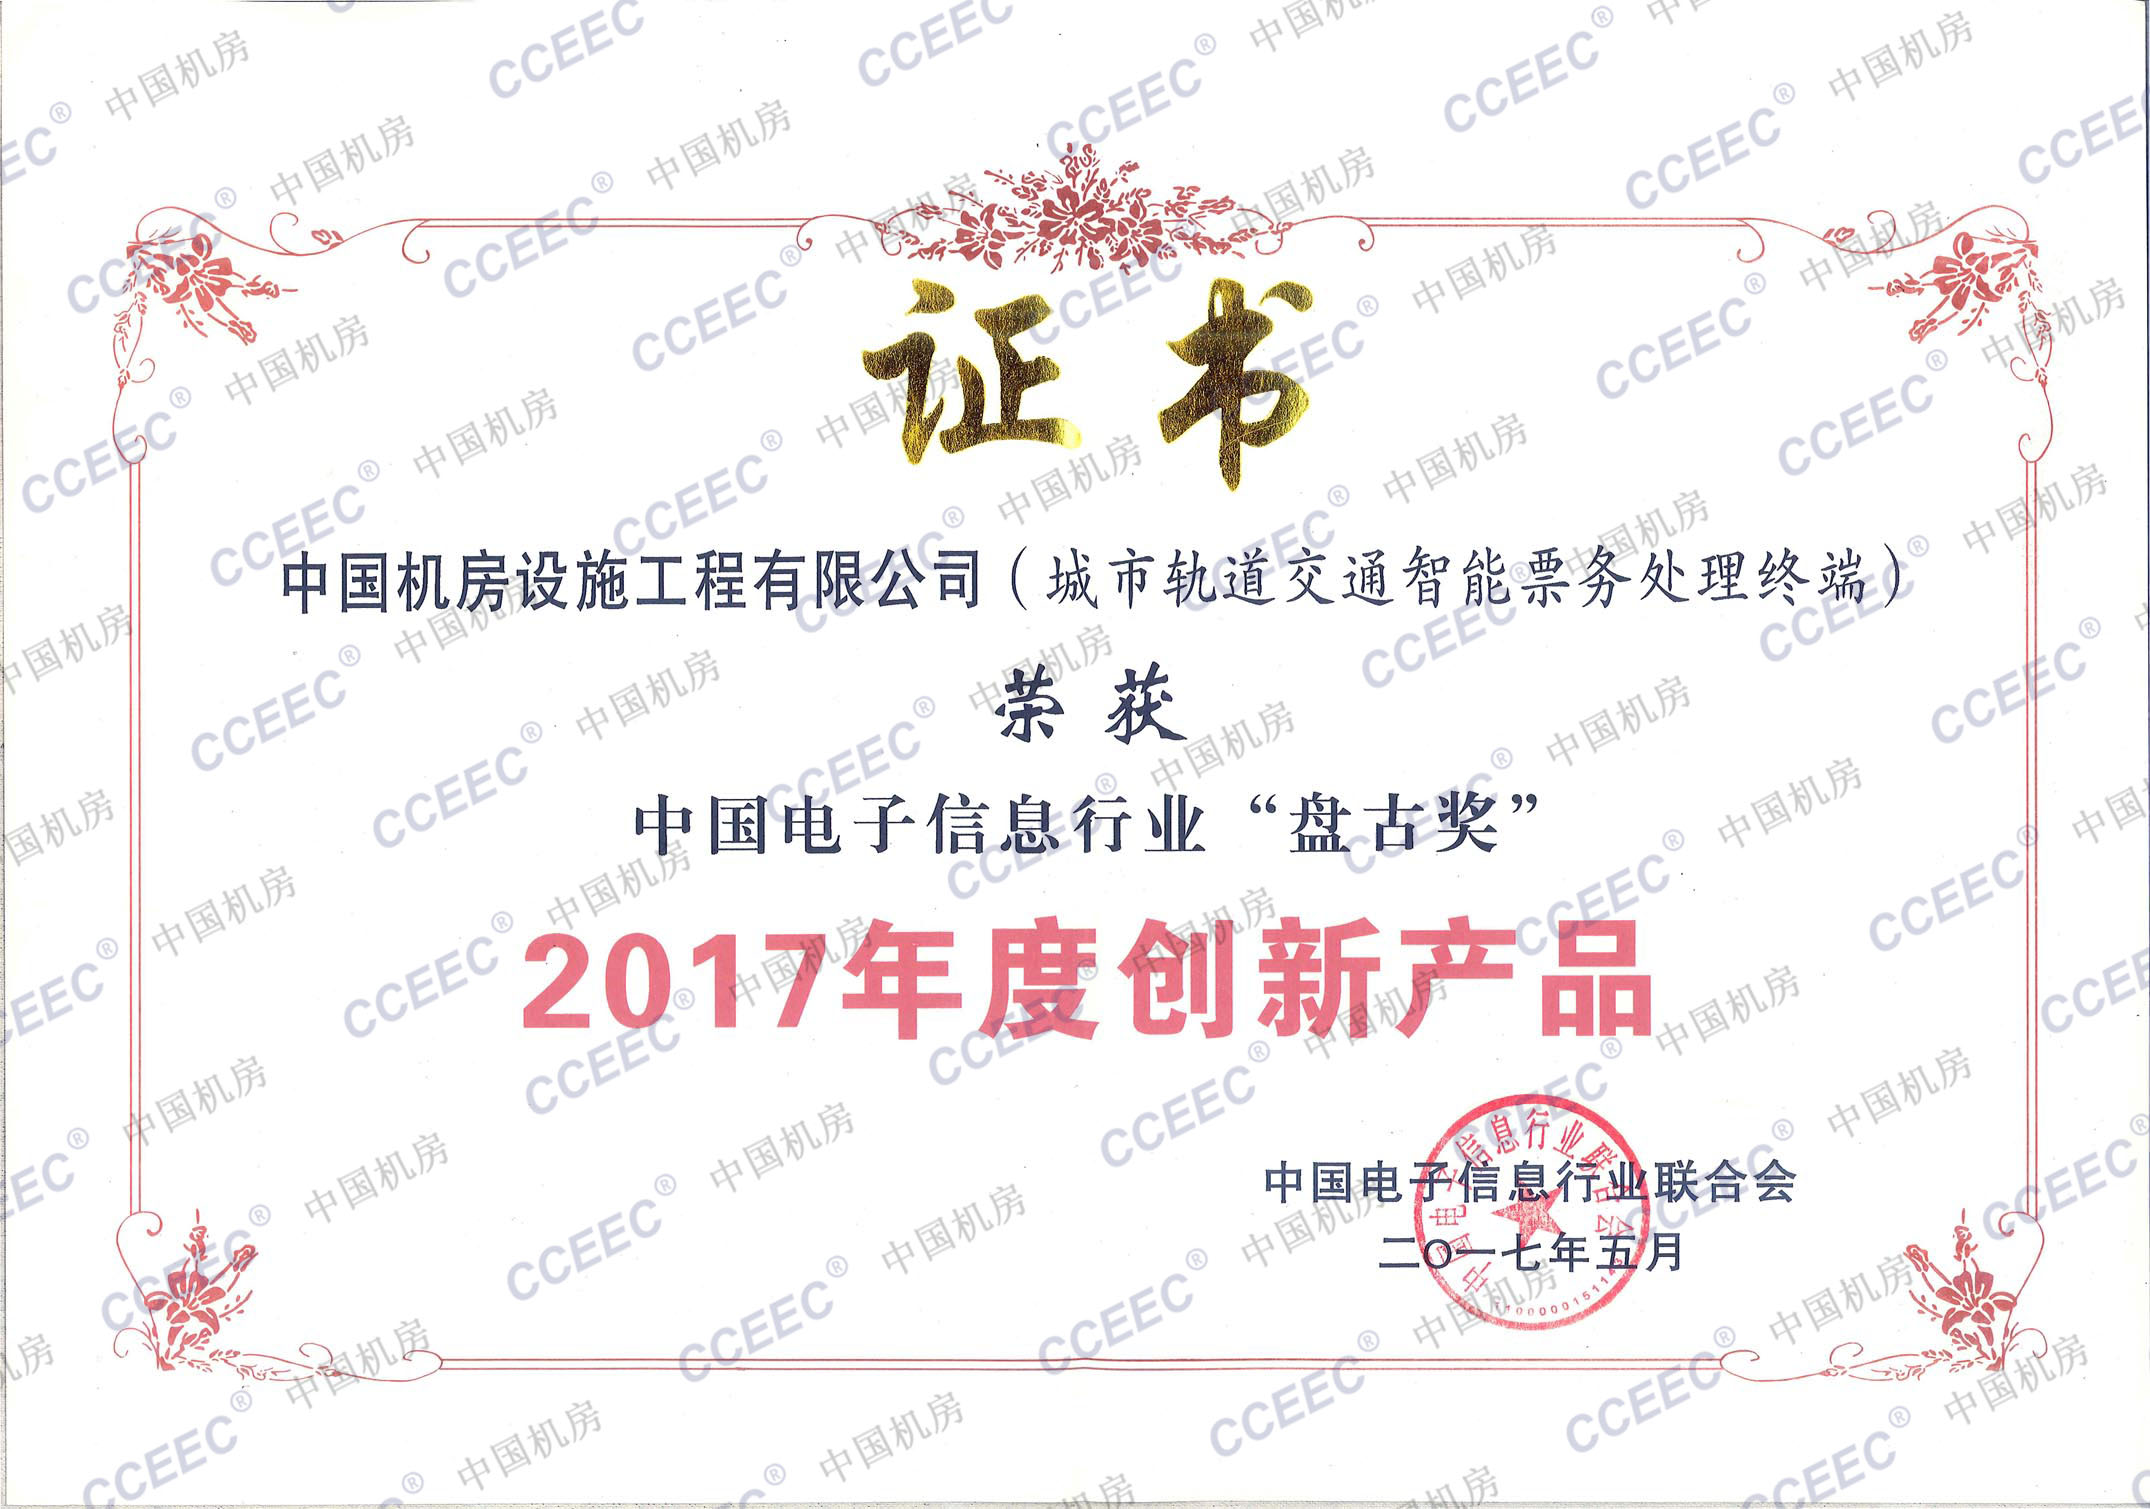 2017年度中国电子信息行业“盘古奖”